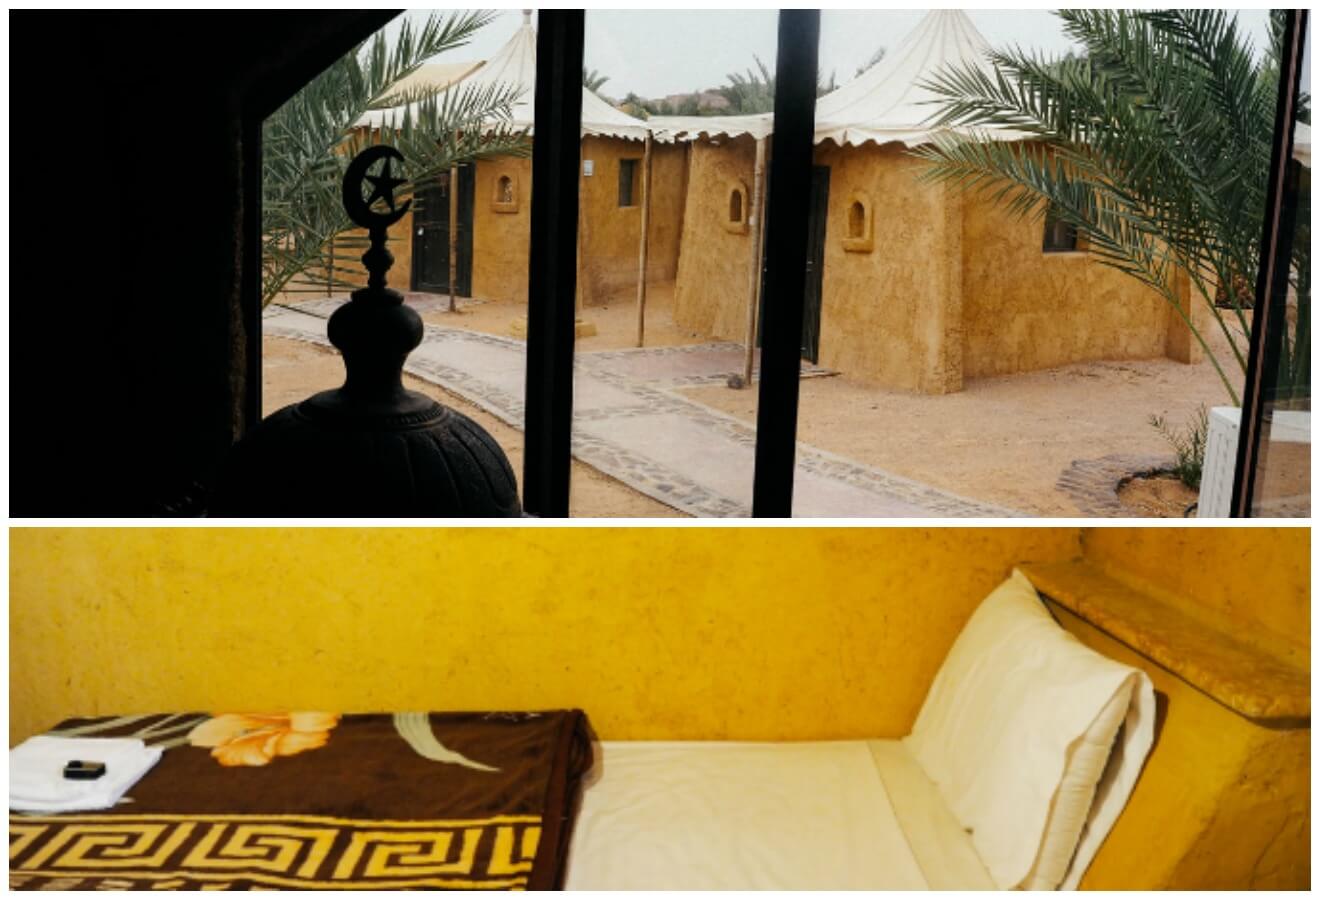 3 Bedouin hotel Wadi Rum Jordan luxury camp